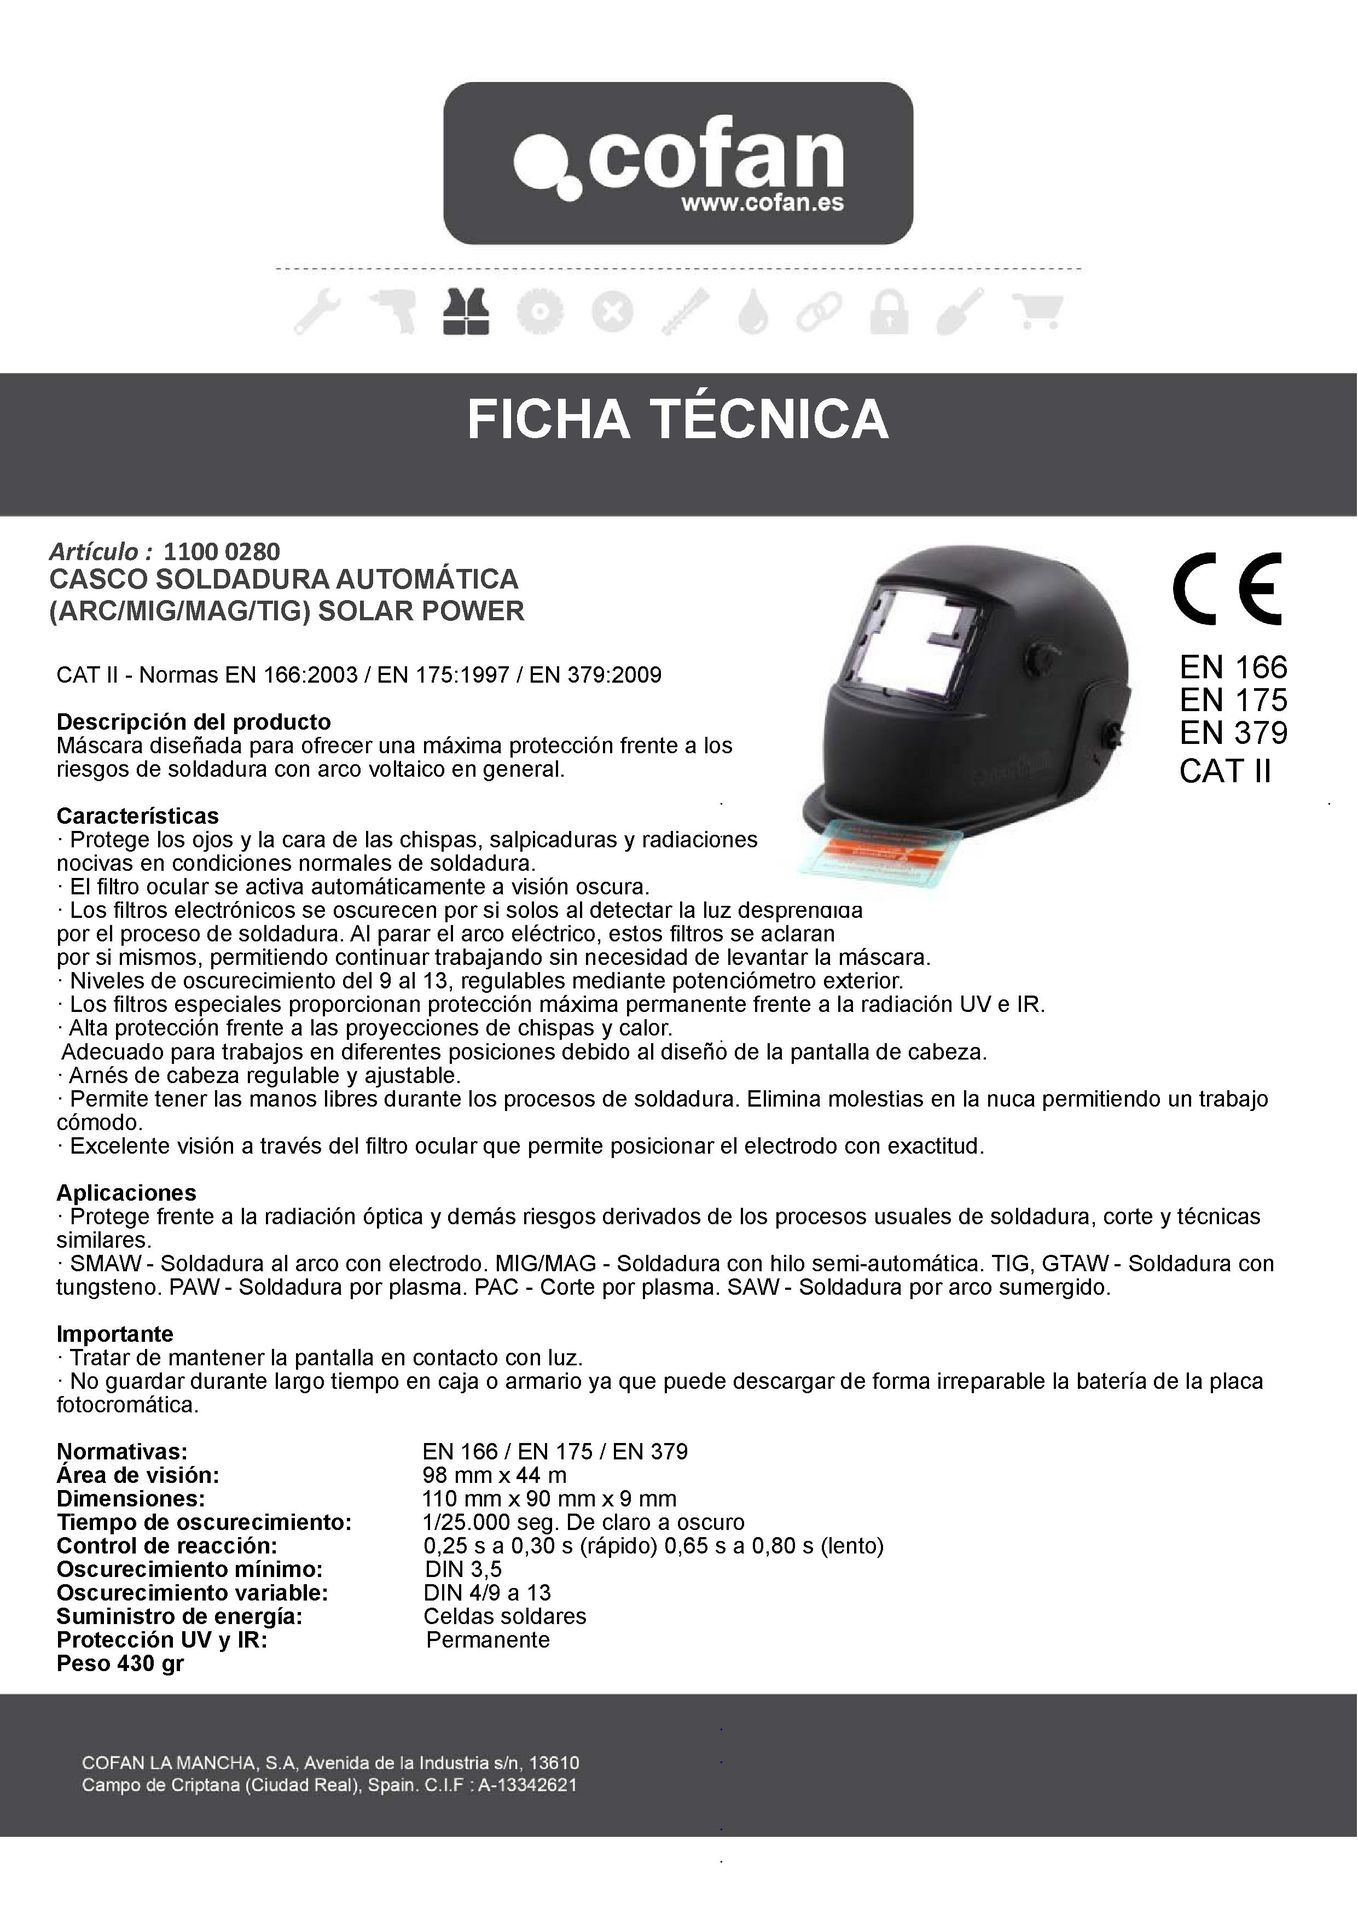 Ficha Técnica de Máscara de Soldar Automática Ref. 11000280